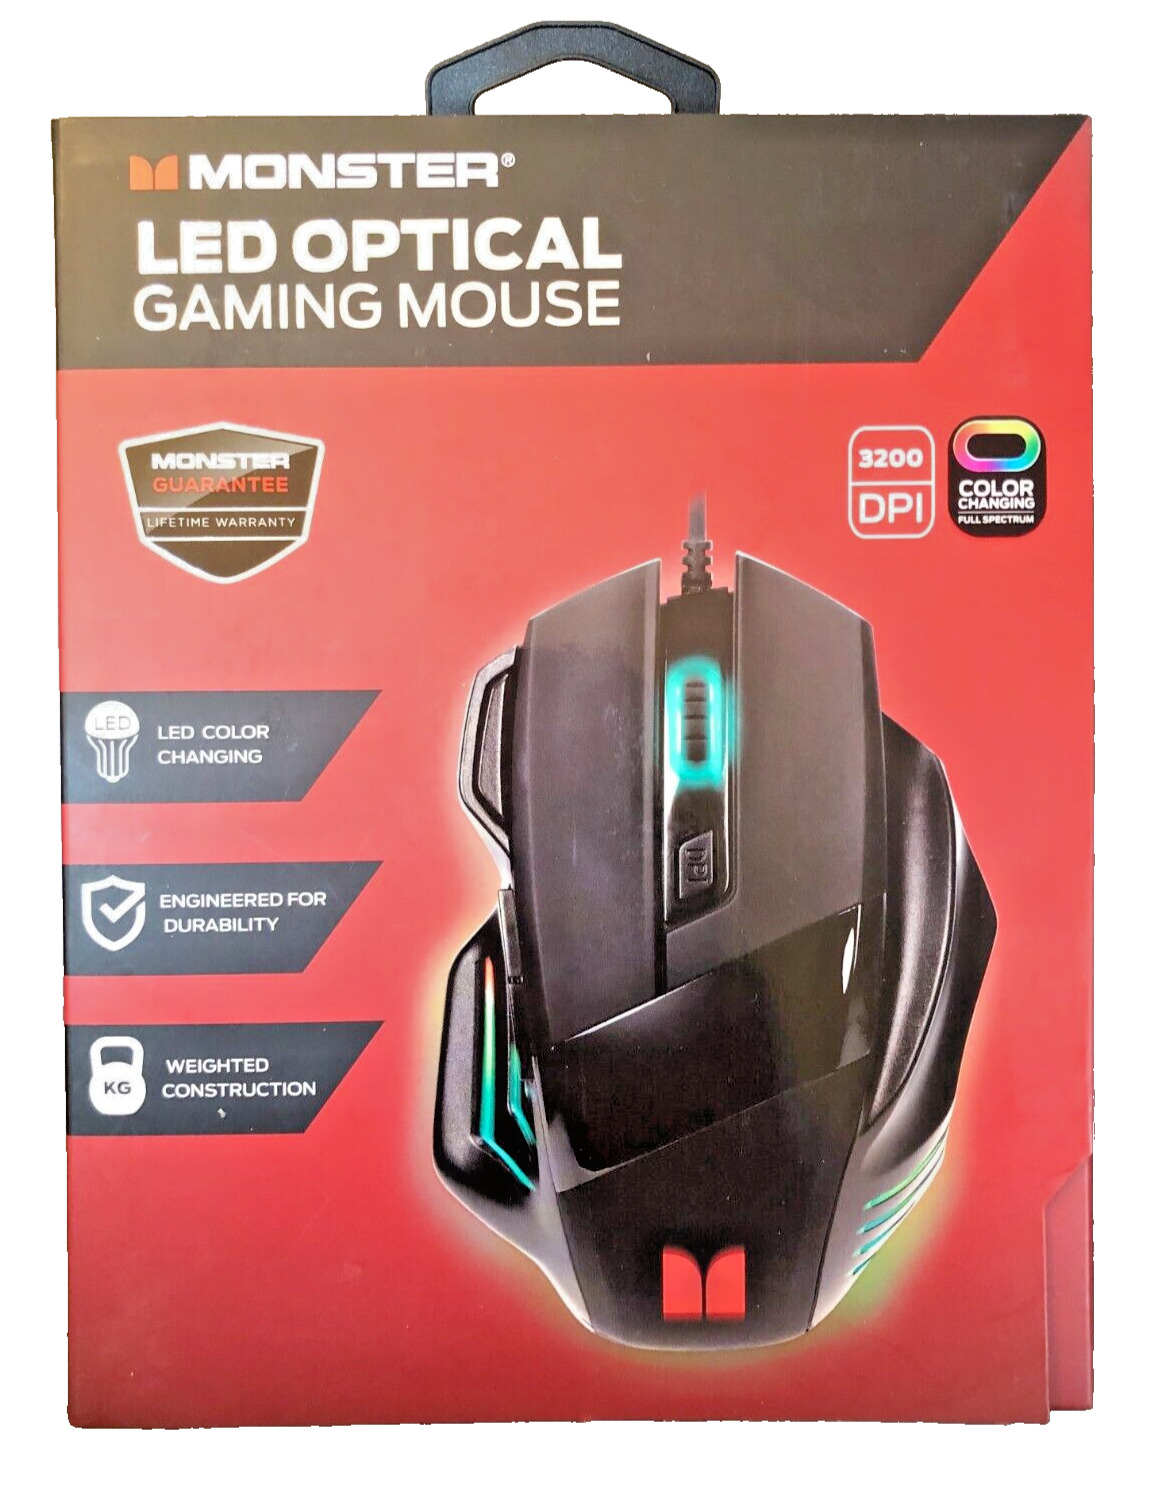 Monster LED Optical Video Gaming Mouse Black, Adjustable 3200DPI, Color Changing